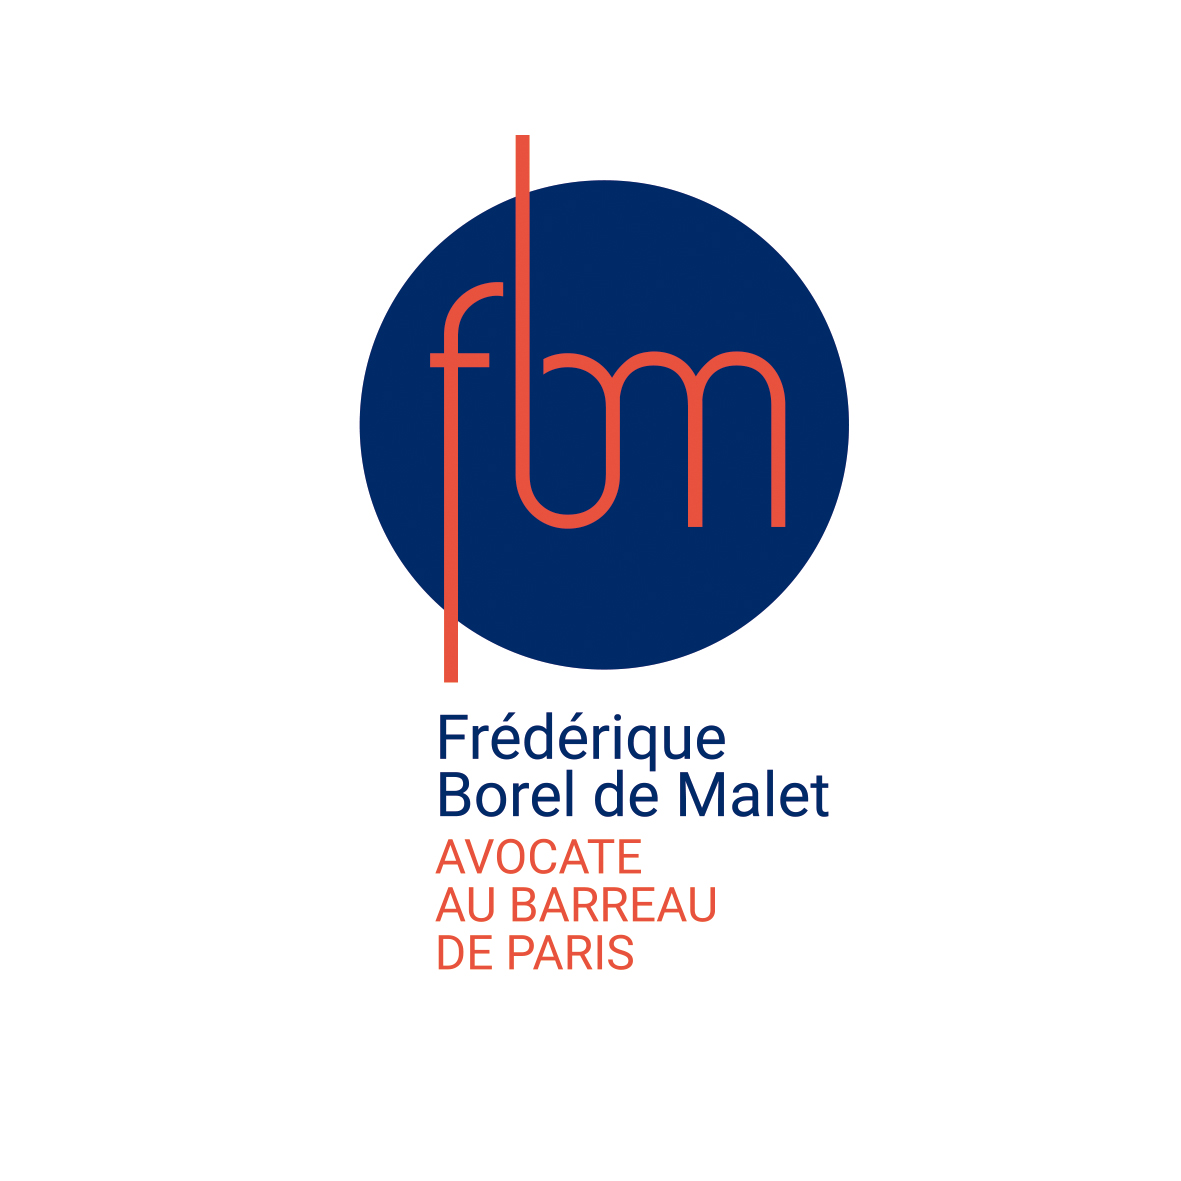 Monogramme Frédérique Borel de Malet